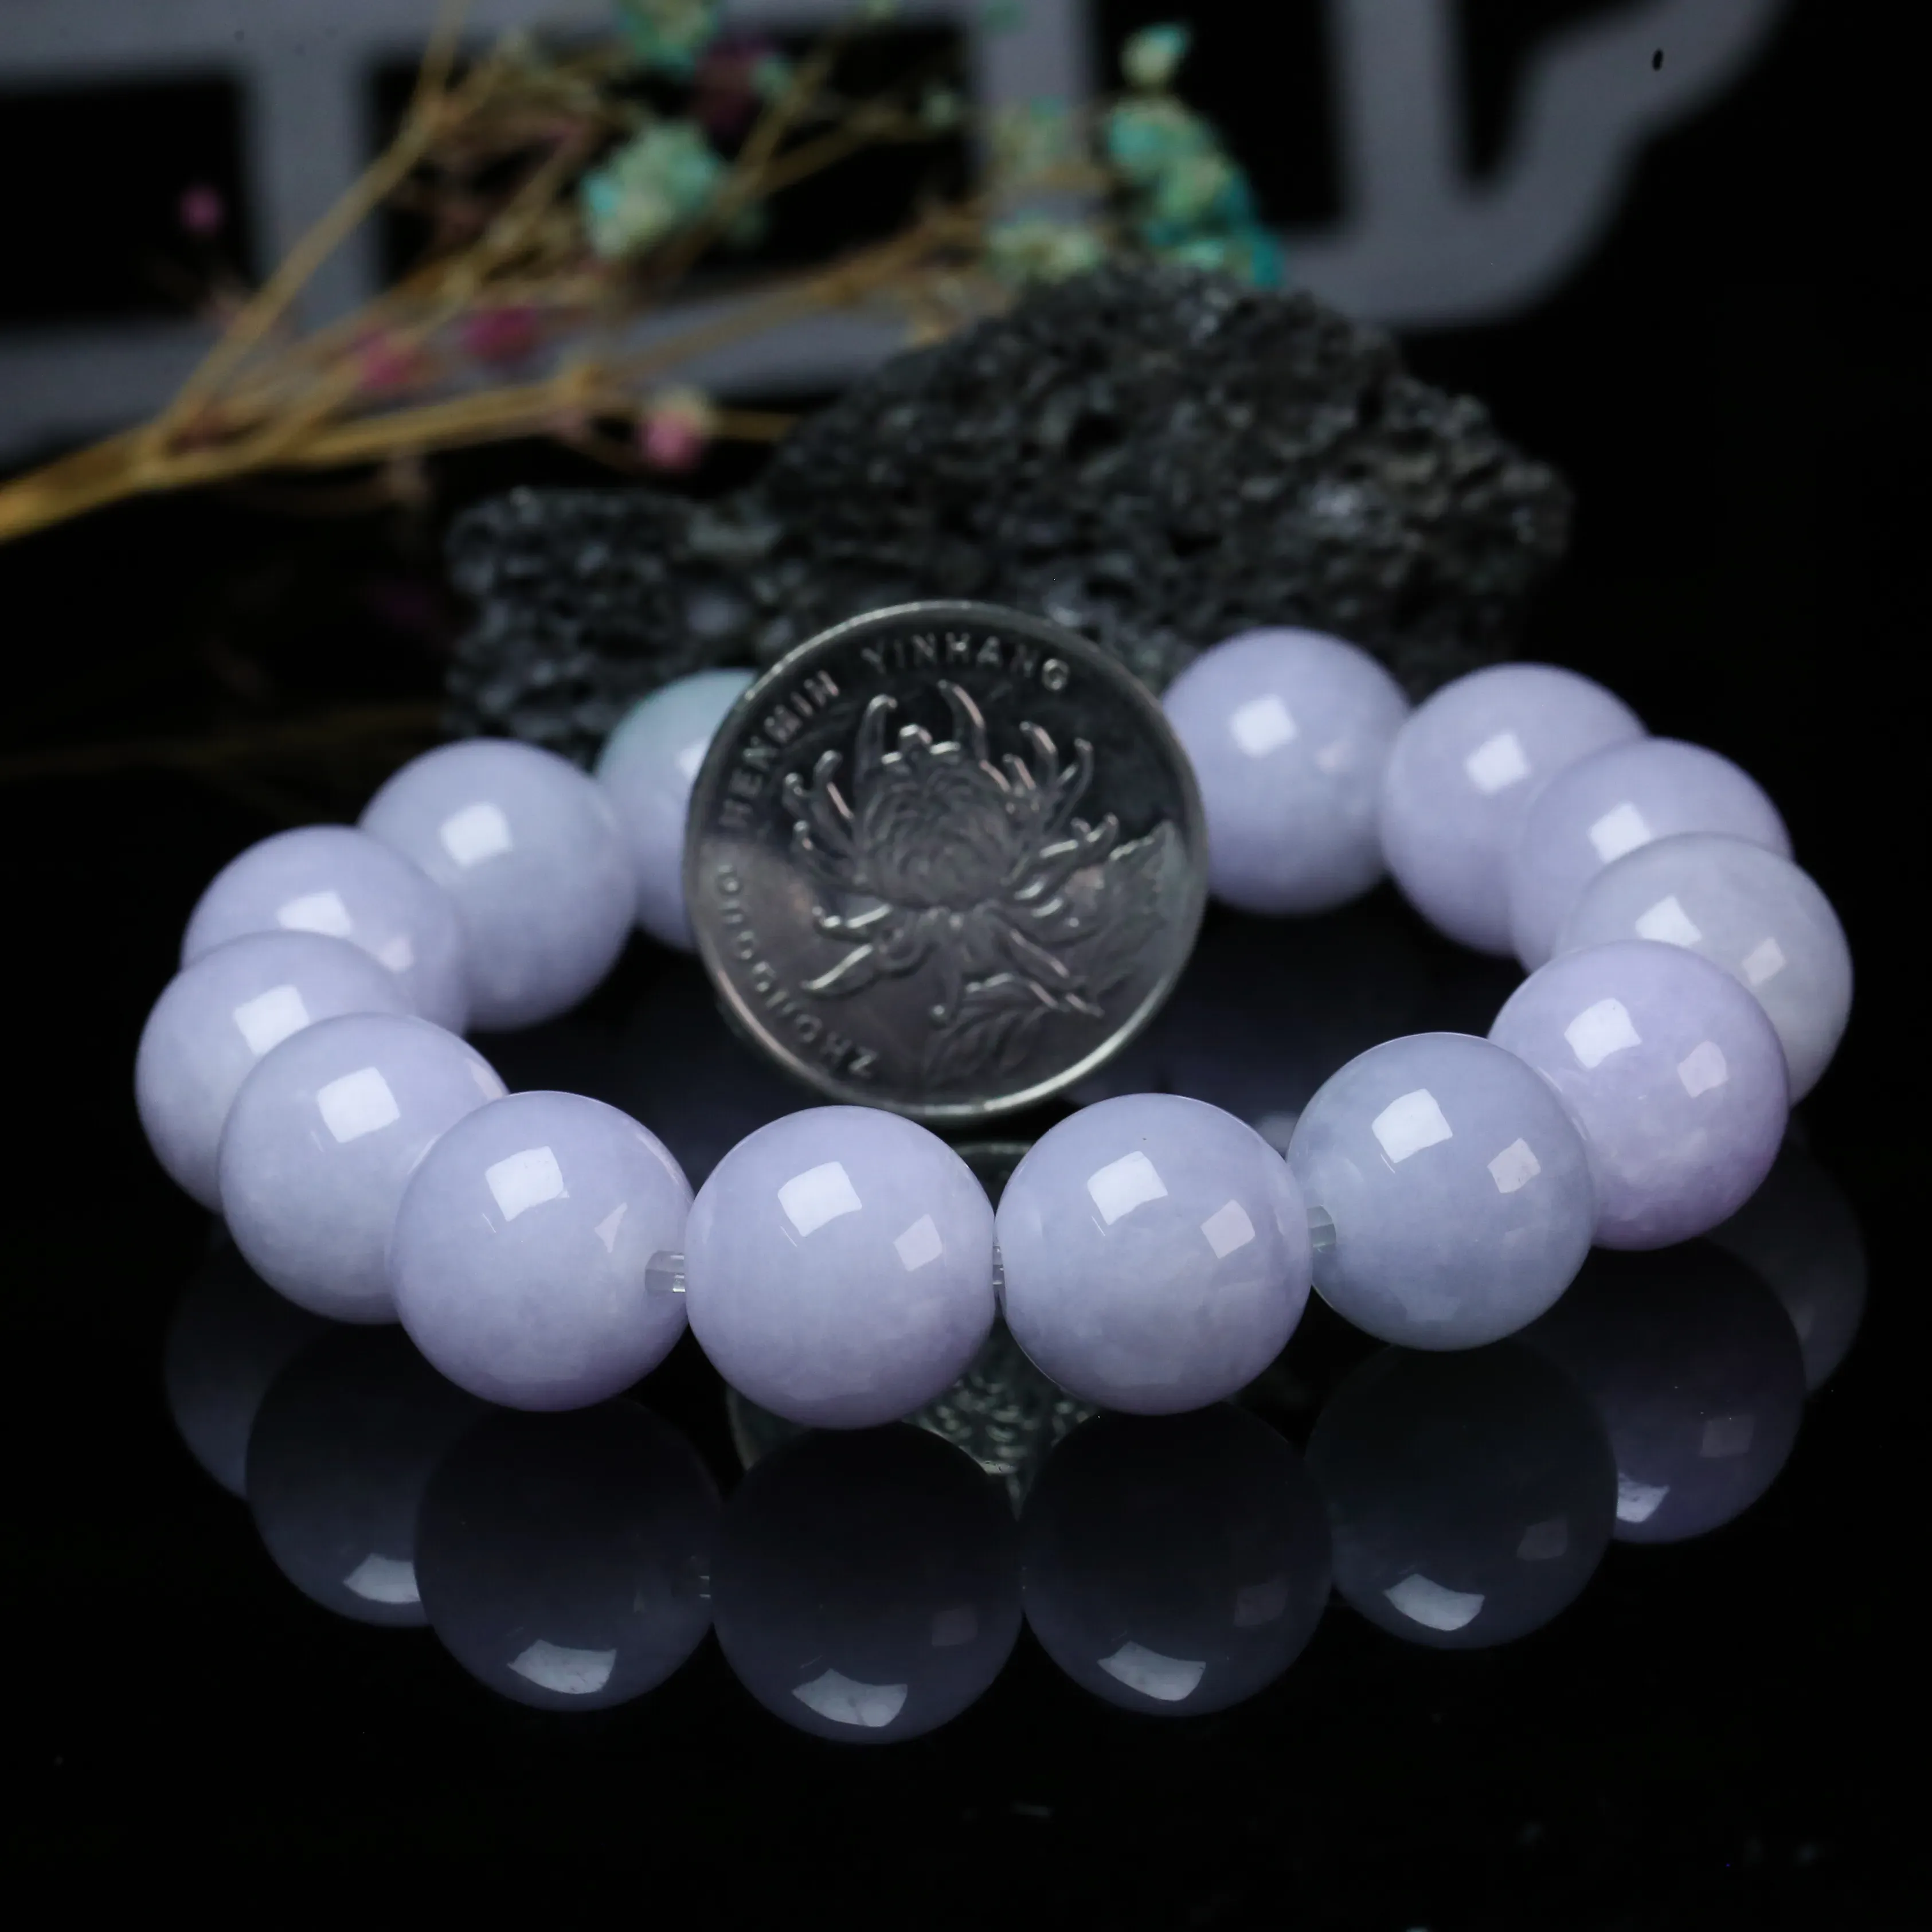 推荐款紫罗兰翡翠圆珠手串。共15颗珠子，取其中一颗珠尺寸大约14mm，亮丽秀气，圆润饱满。上手佩戴效果佳。